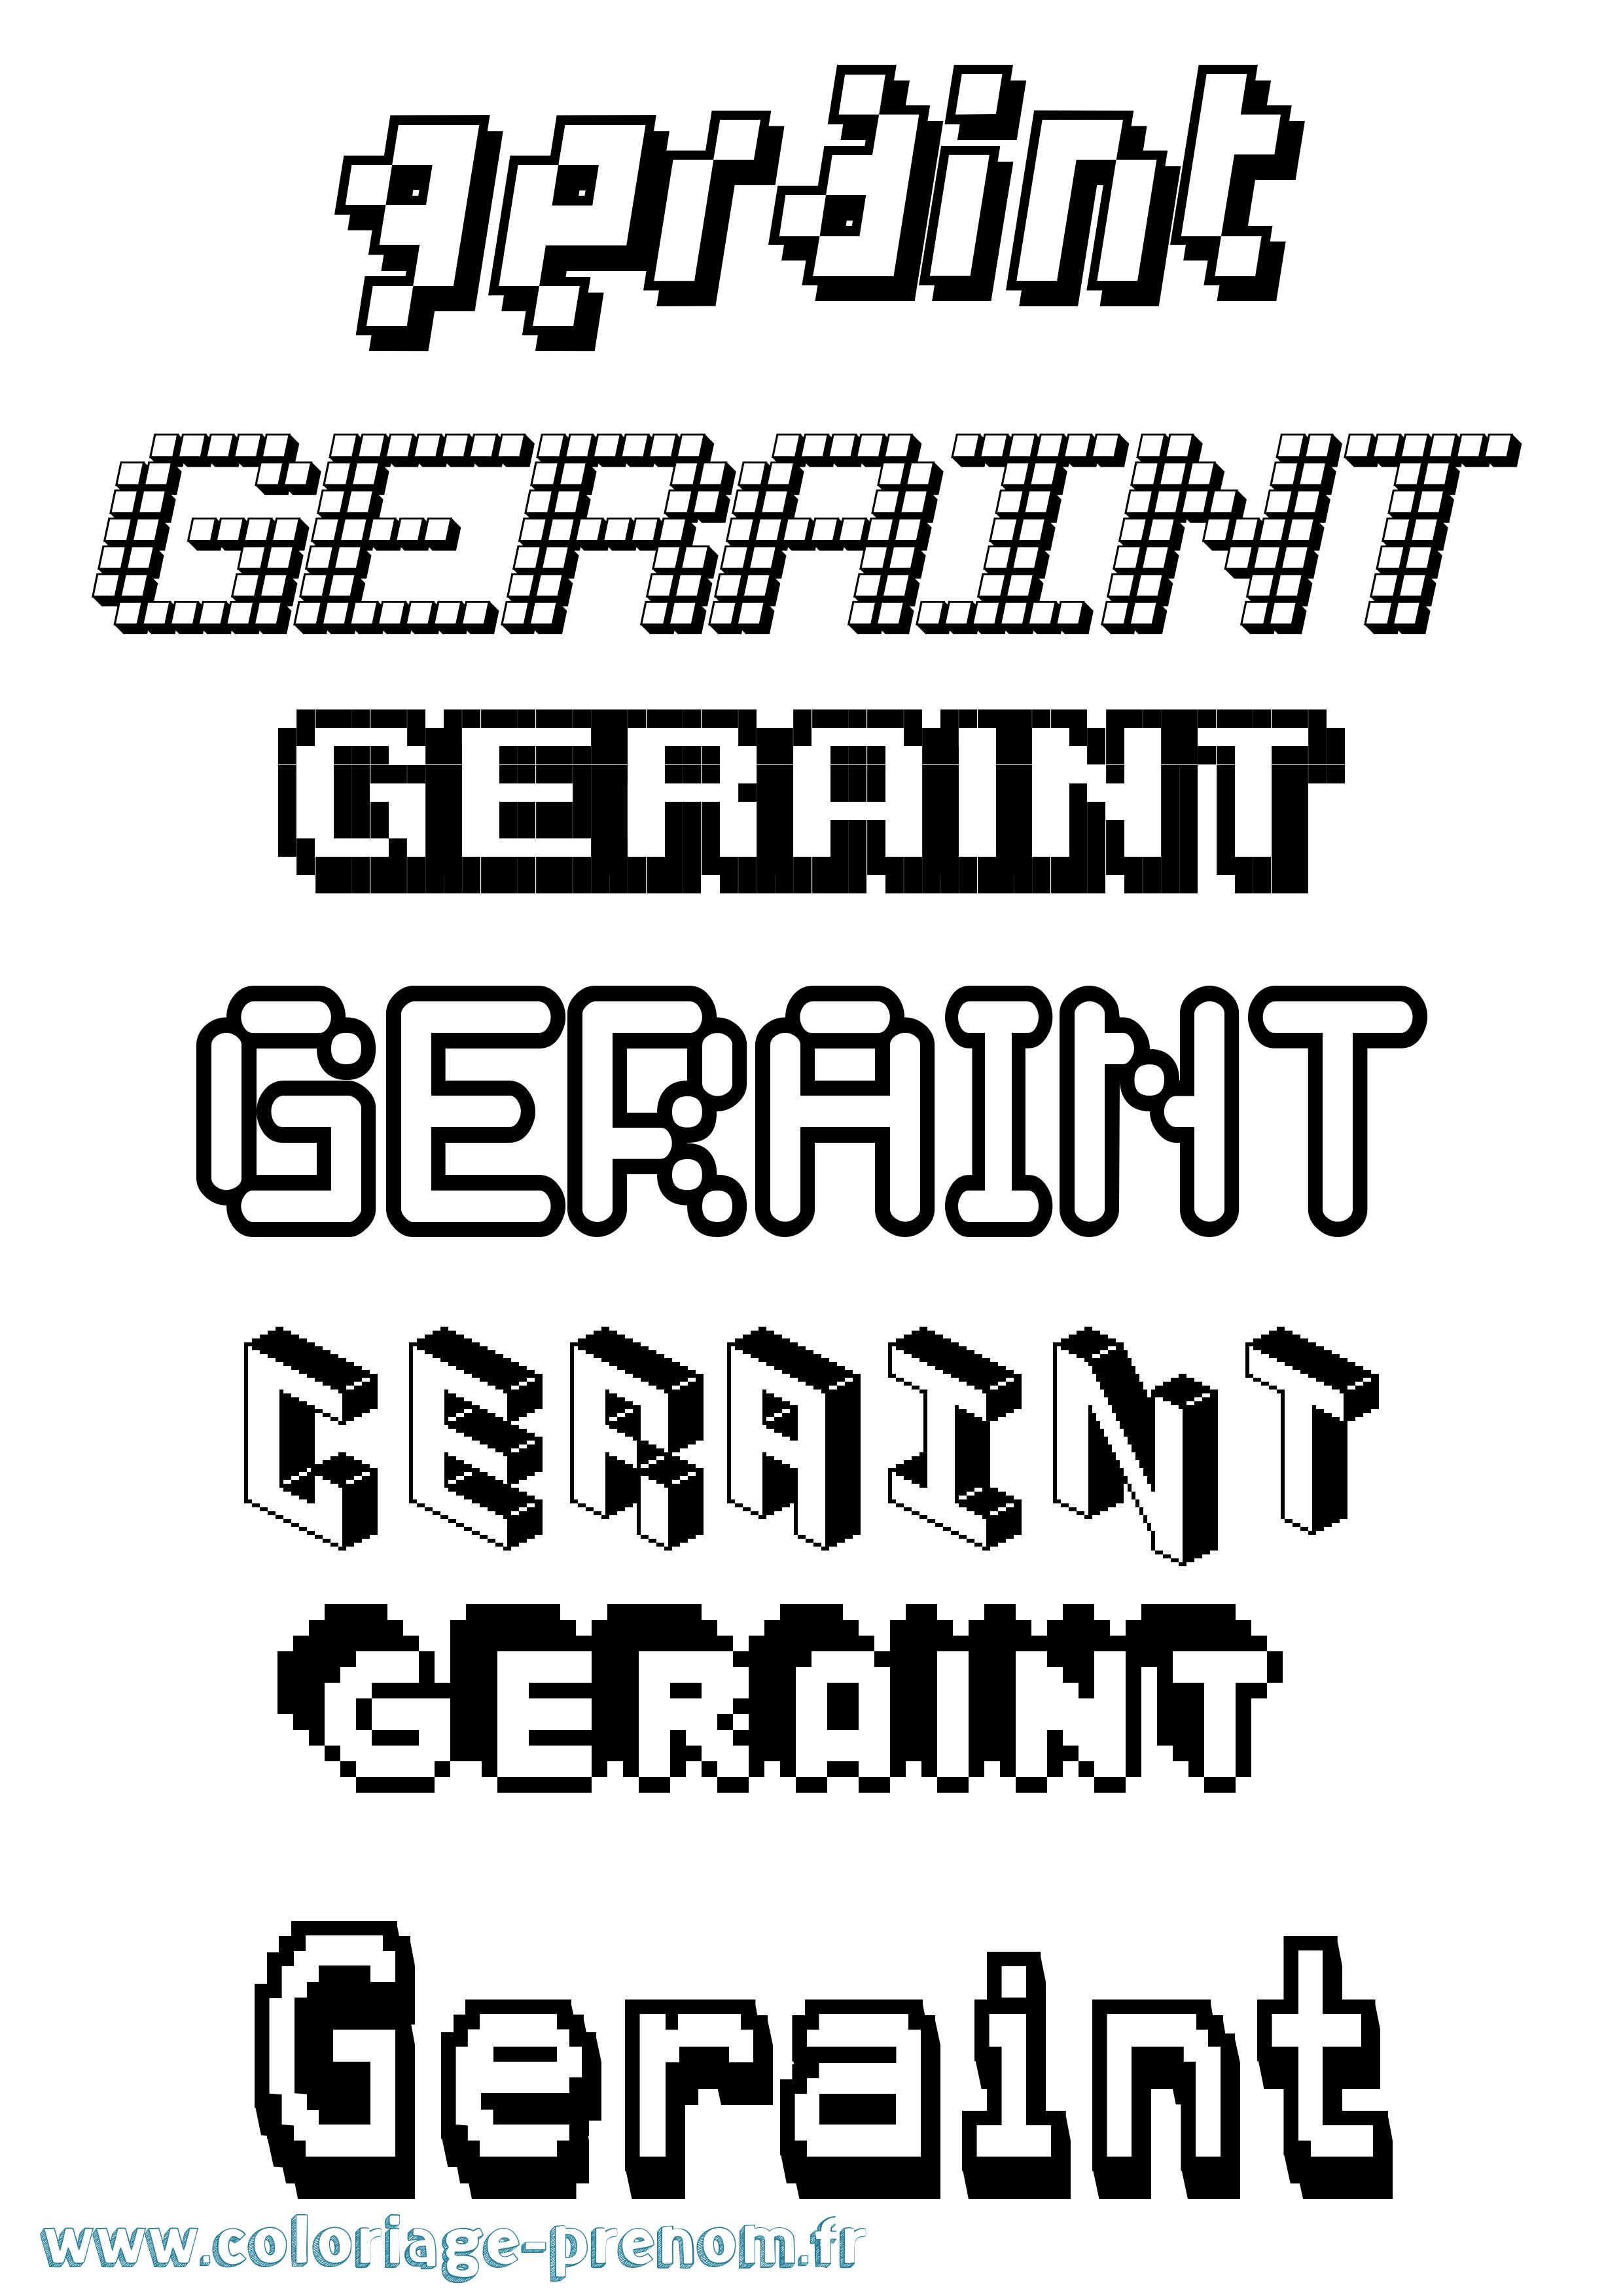 Coloriage prénom Geraint Pixel